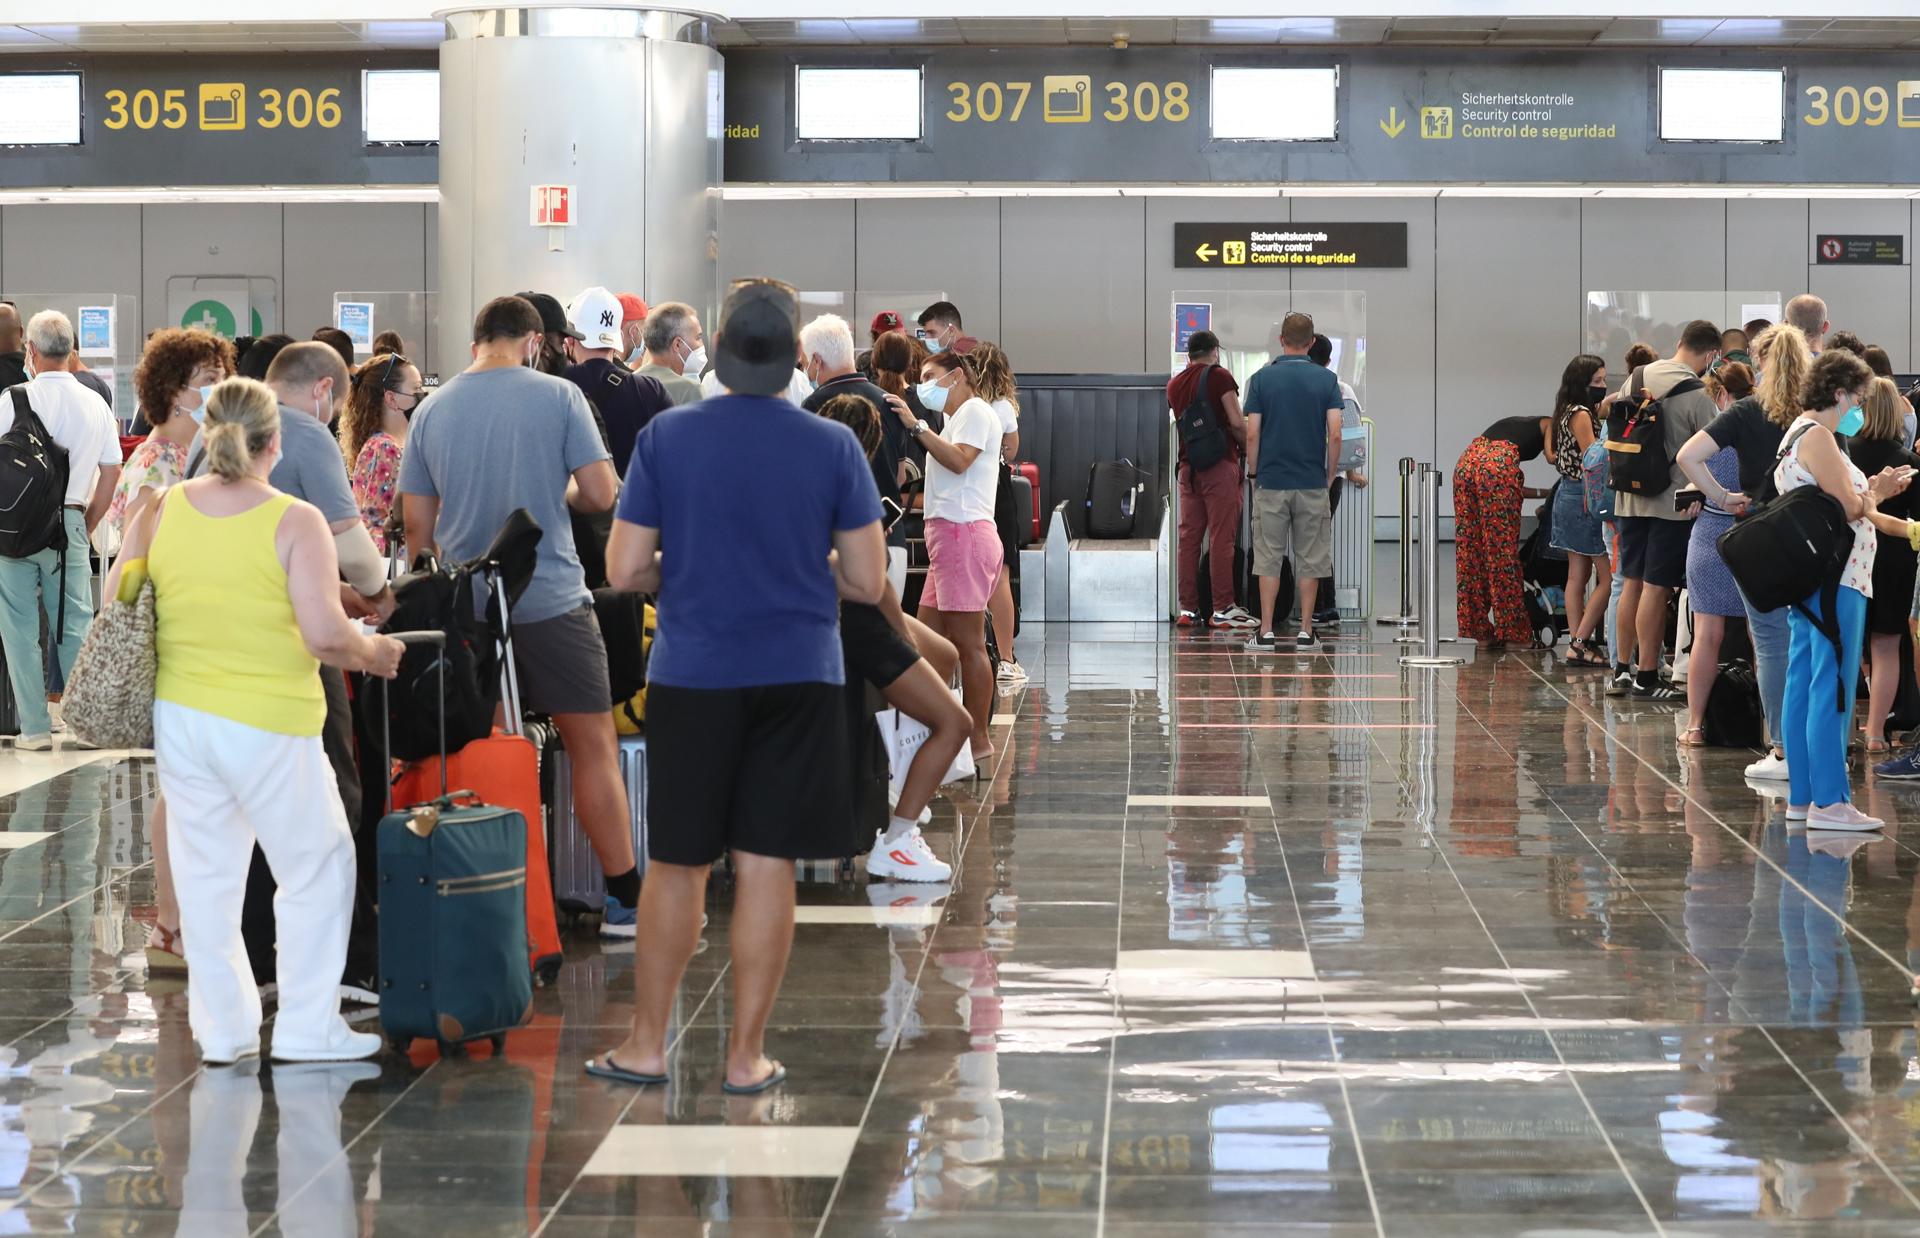 Foto de archivo de la terminal de vuelos internacionales del aeropuerto de Gran Canaria. EFE/ Elvira Urquijo A.